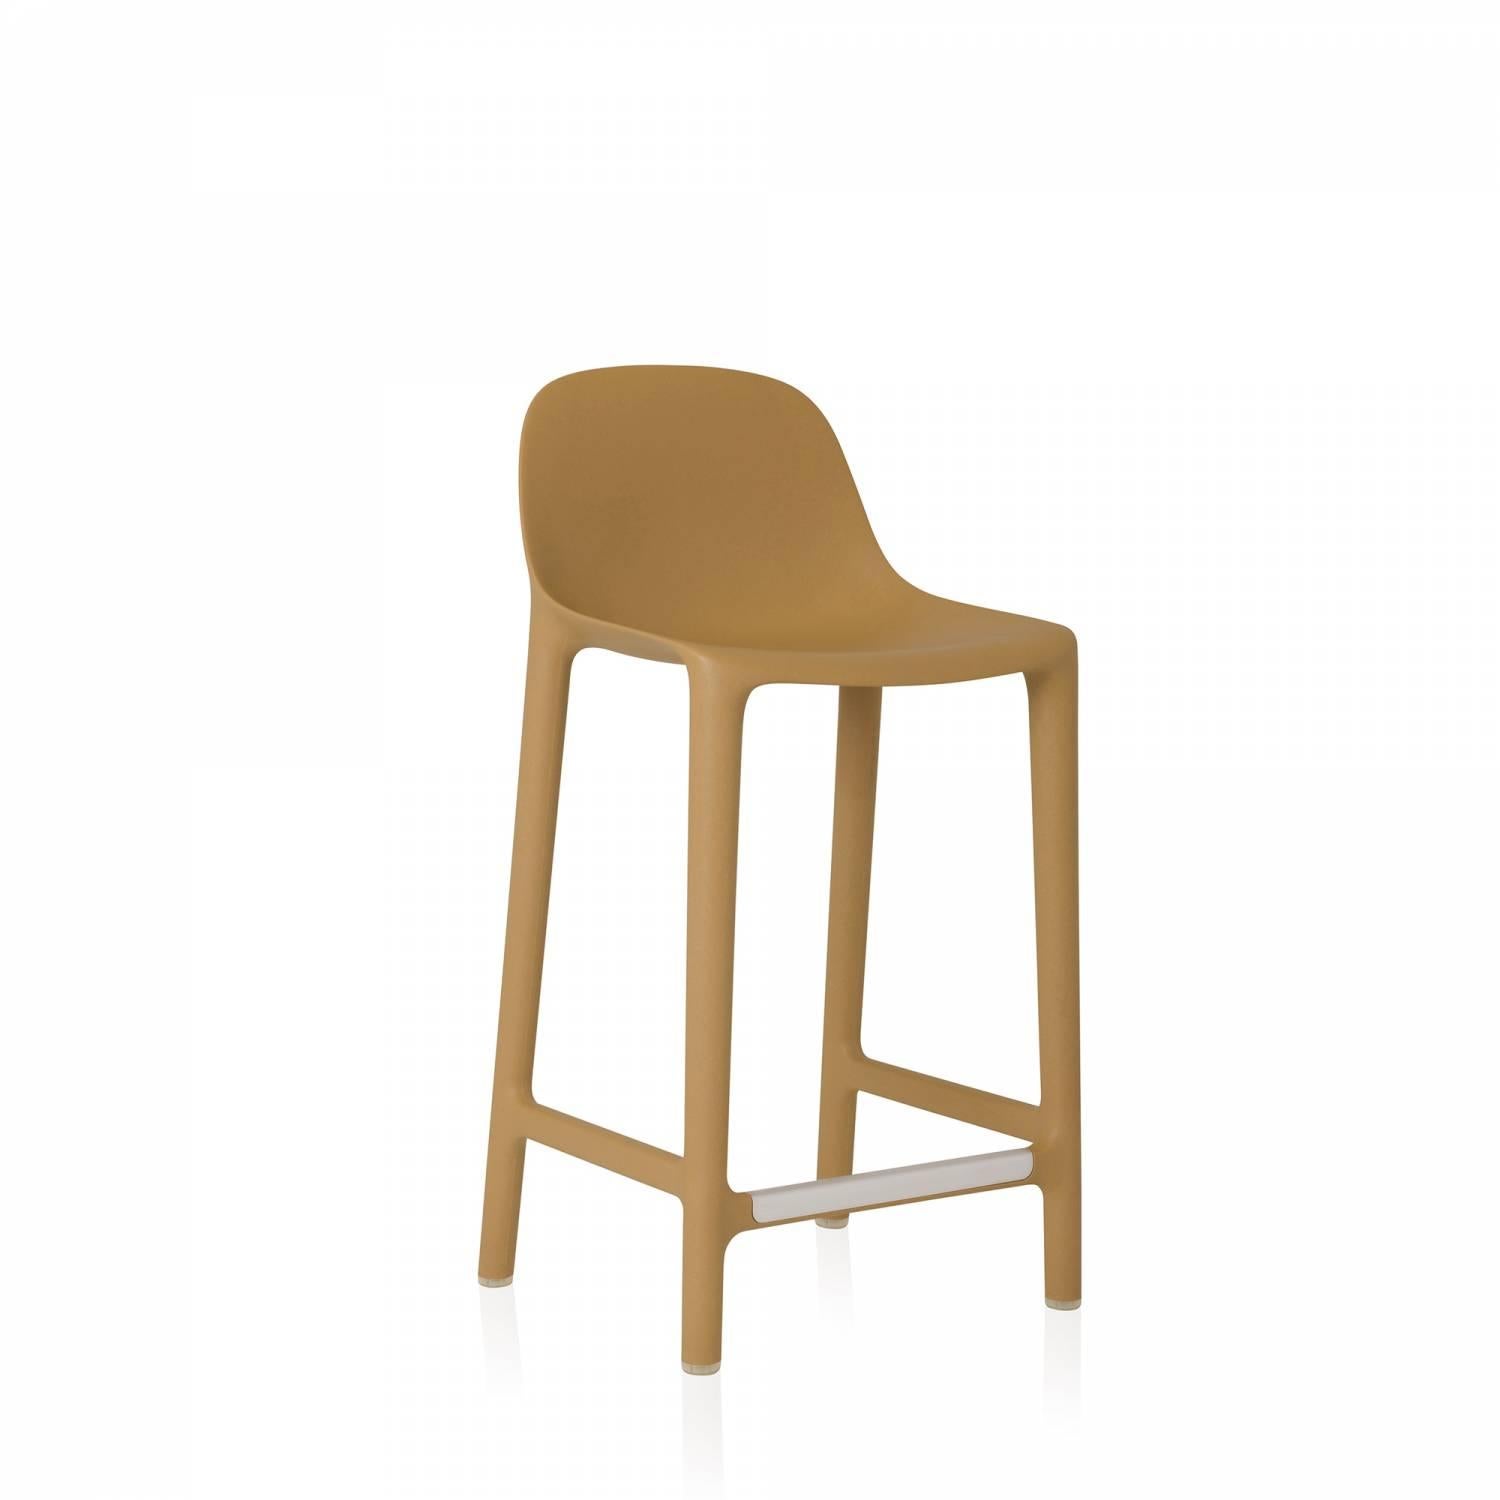 Philippe Starck et Emeco se sont associés pour créer une nouvelle chaise qui est récupérée, recyclée, recyclable et conçue pour durer. La chaise est fabriquée à partir de 75 % de polypropylène usagé et de 15 % de bois de récupération qui seraient